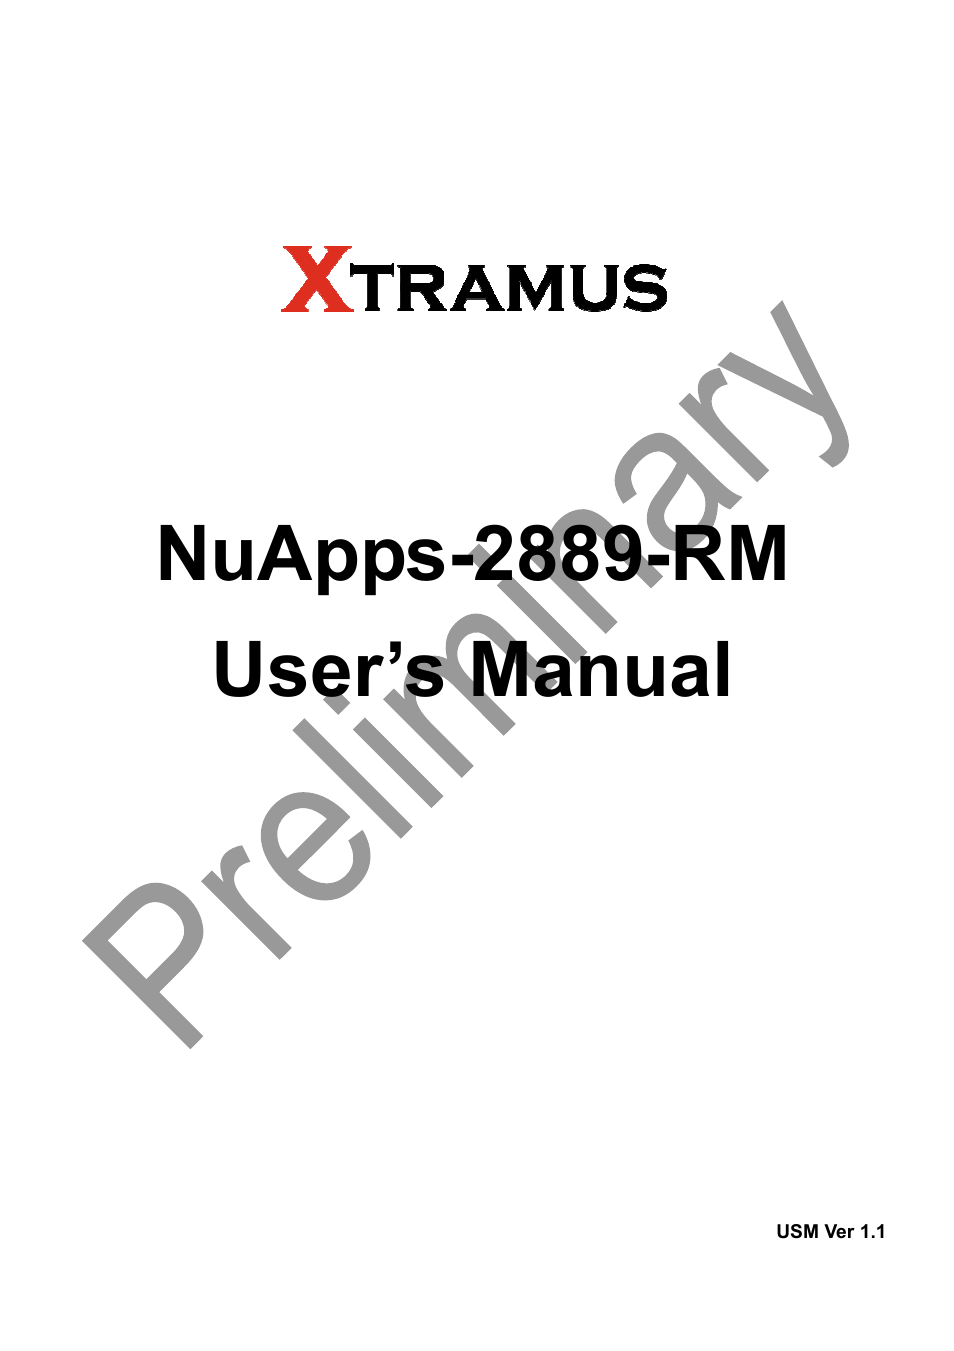 NuApps-2889-RM V1.1